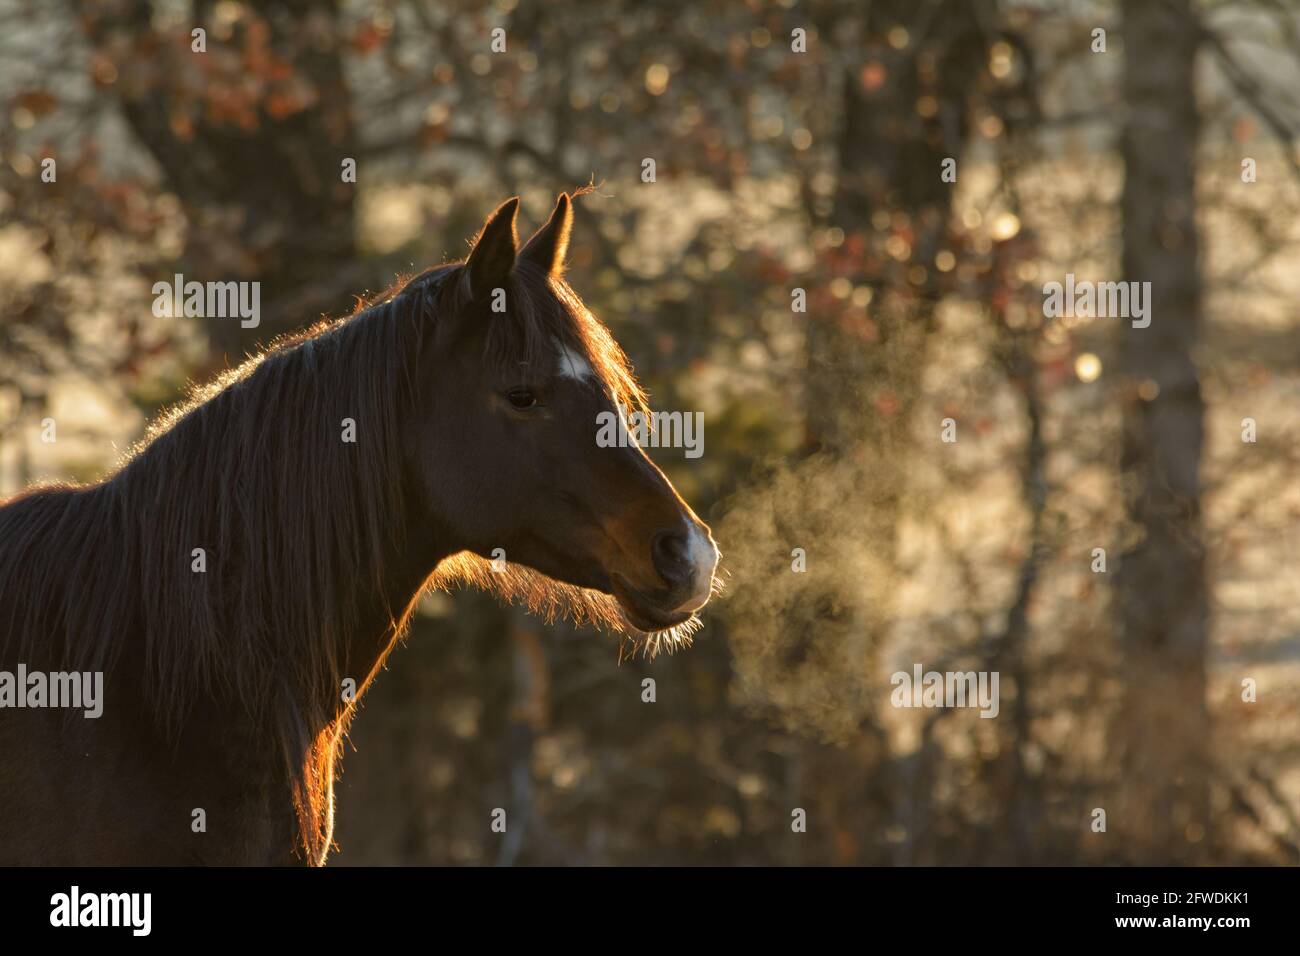 Dunkles arabisches Pferd an einem frühen Wintermorgen, mit Sonnenaufgang, der seine Kontur und seinen dampfenden Atem erhellt Stockfoto